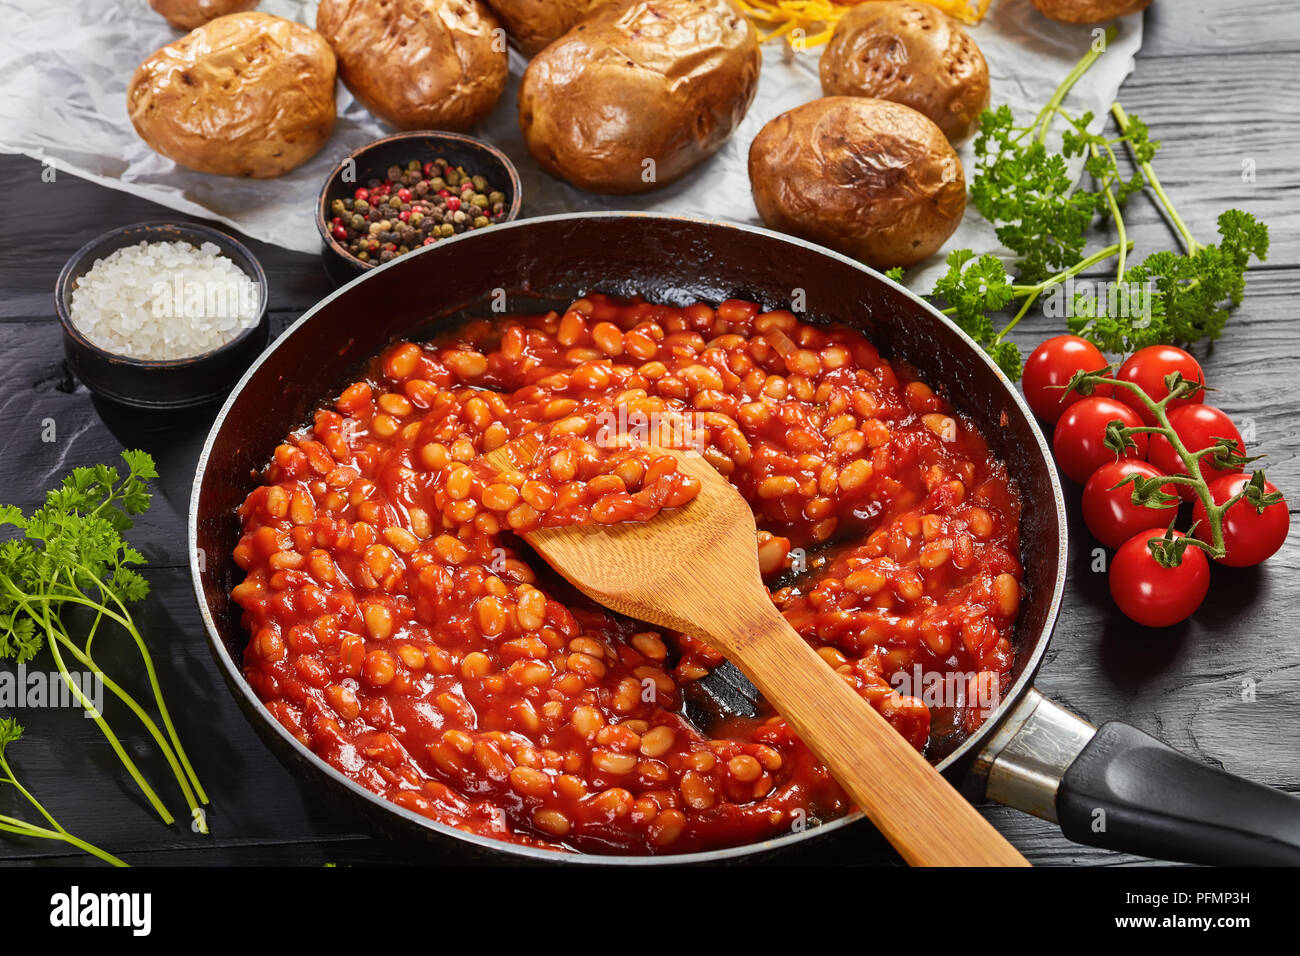 Bohnen mit Tomatensauce in einer Pfanne. gebackene Kartoffel oder Pellkartoffeln mit Goldgelb knusprige Haut auf einem Papier mit Cheddar Käse im Hintergrund, Verti Stockfoto